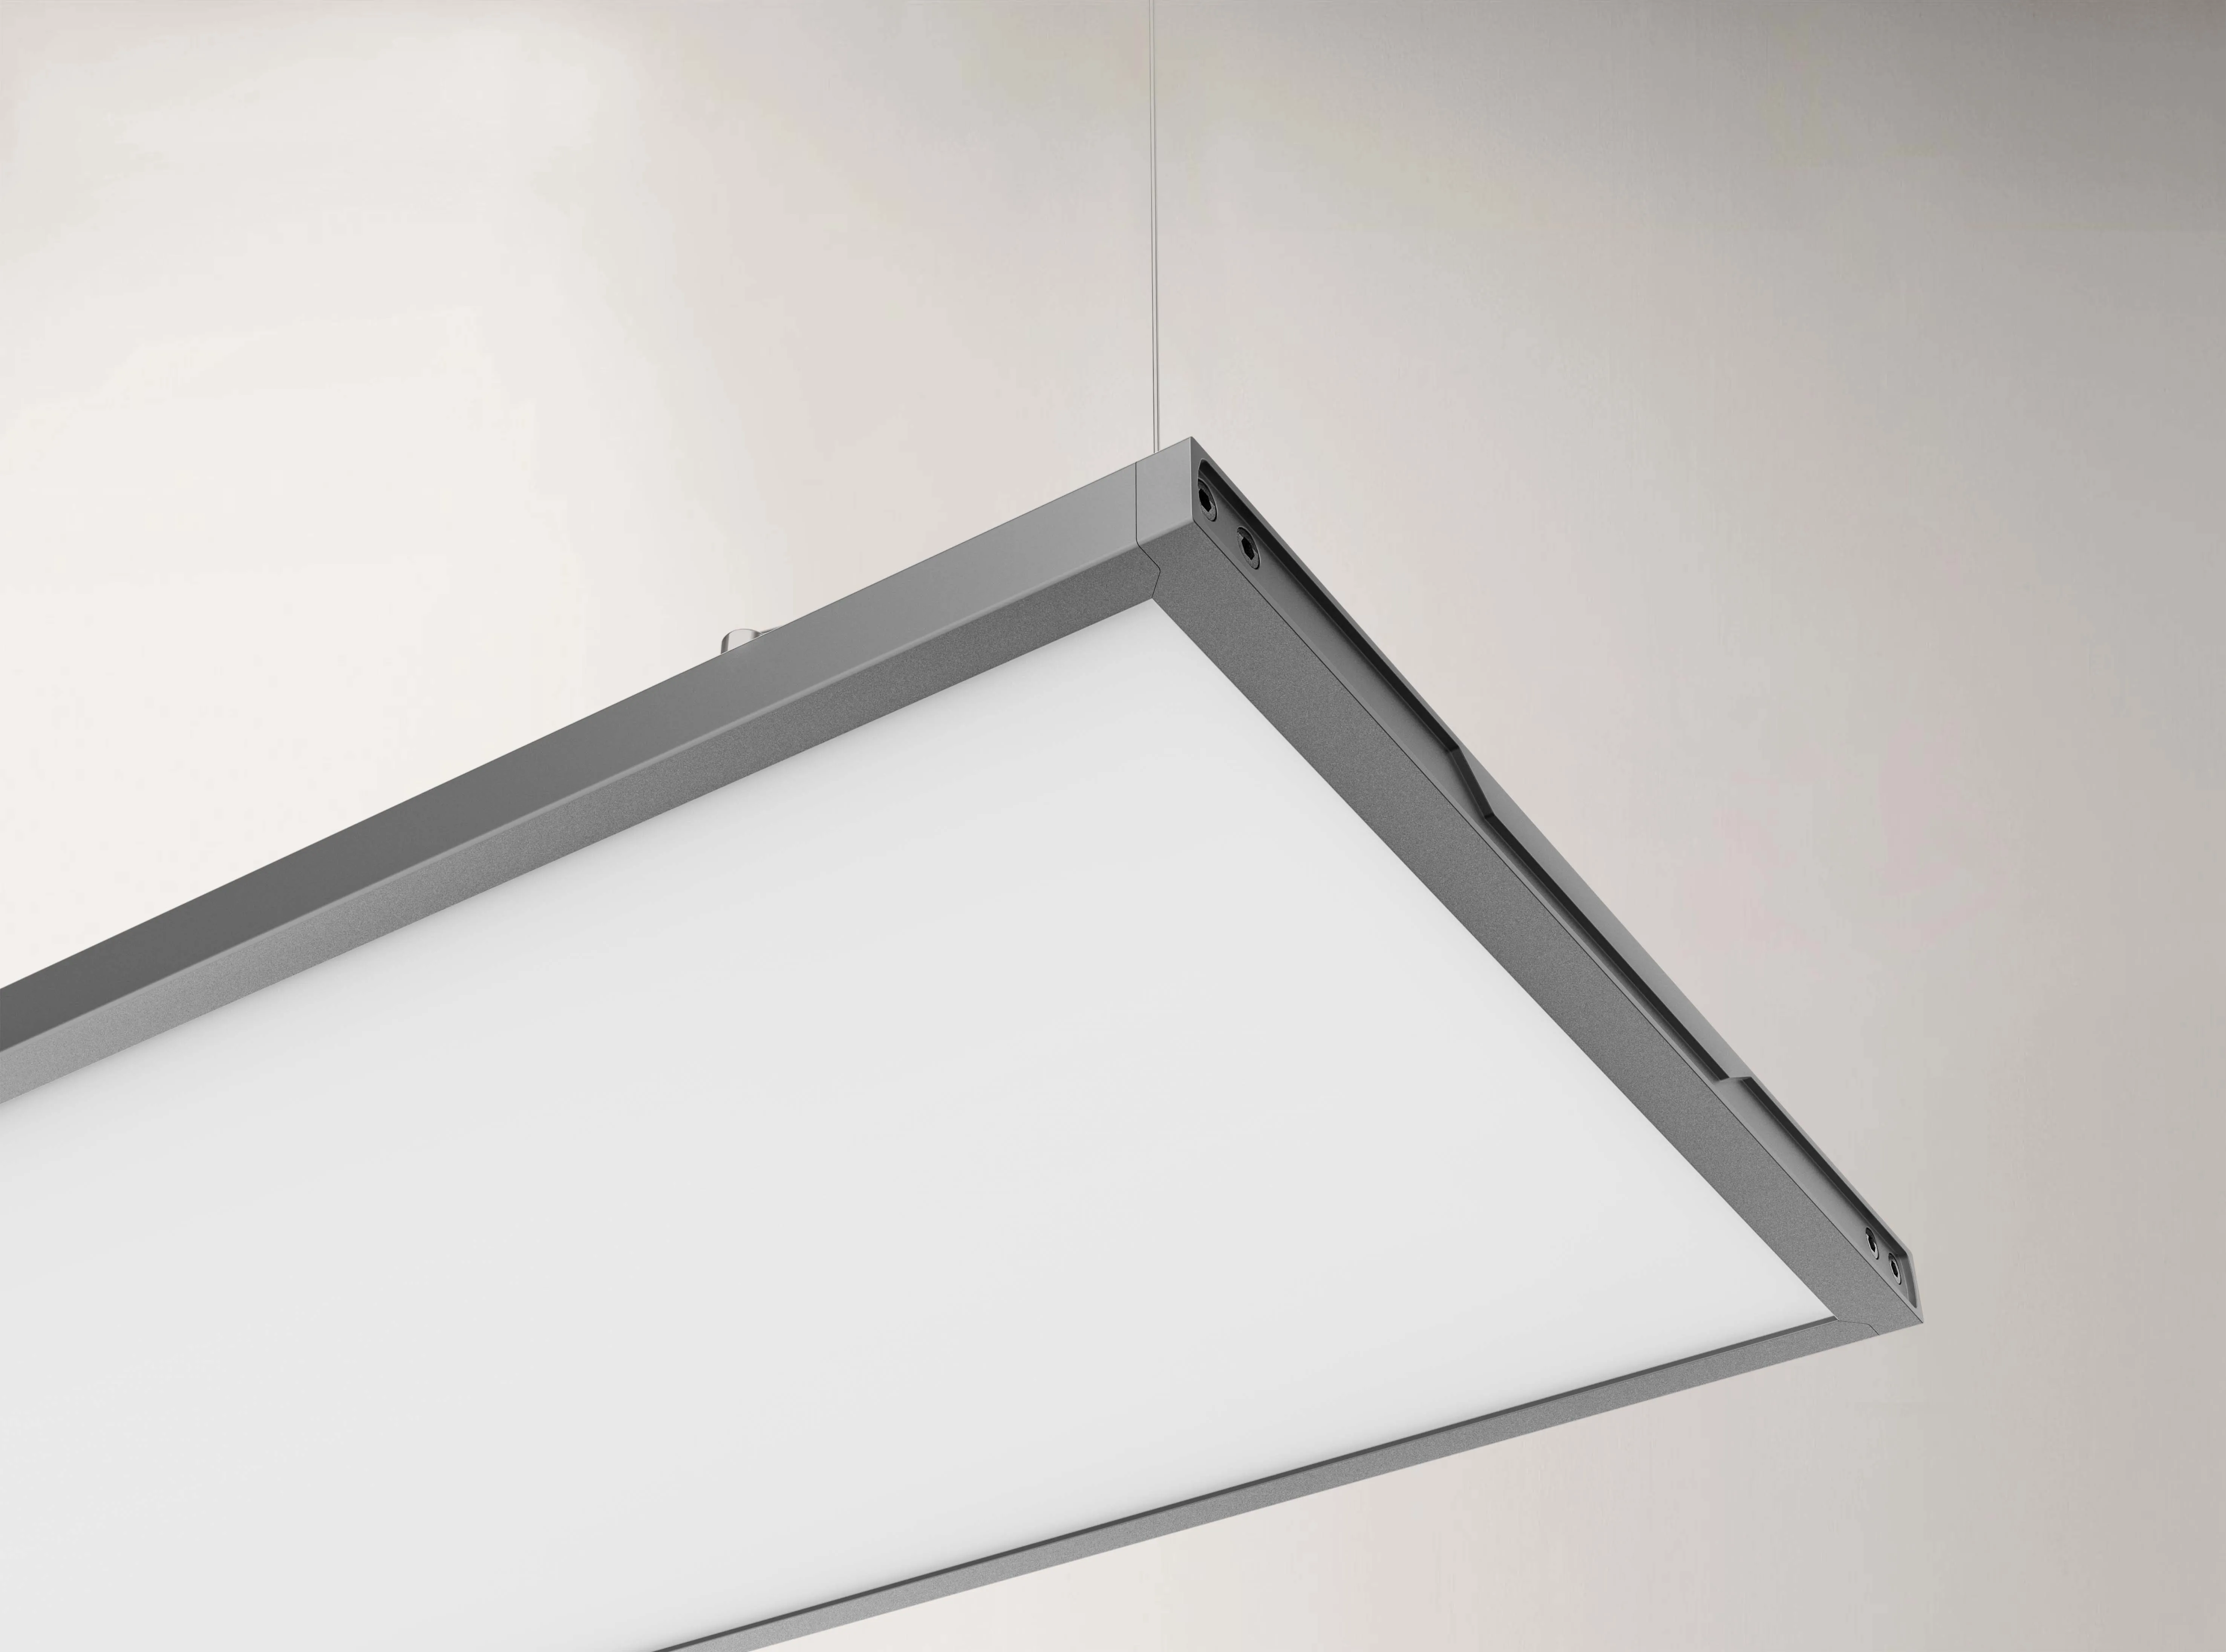 Inlity Flat Lamp Lighting 36w 6000K Square Led Panel Light Hot Selling led pendant ceiling light For the office